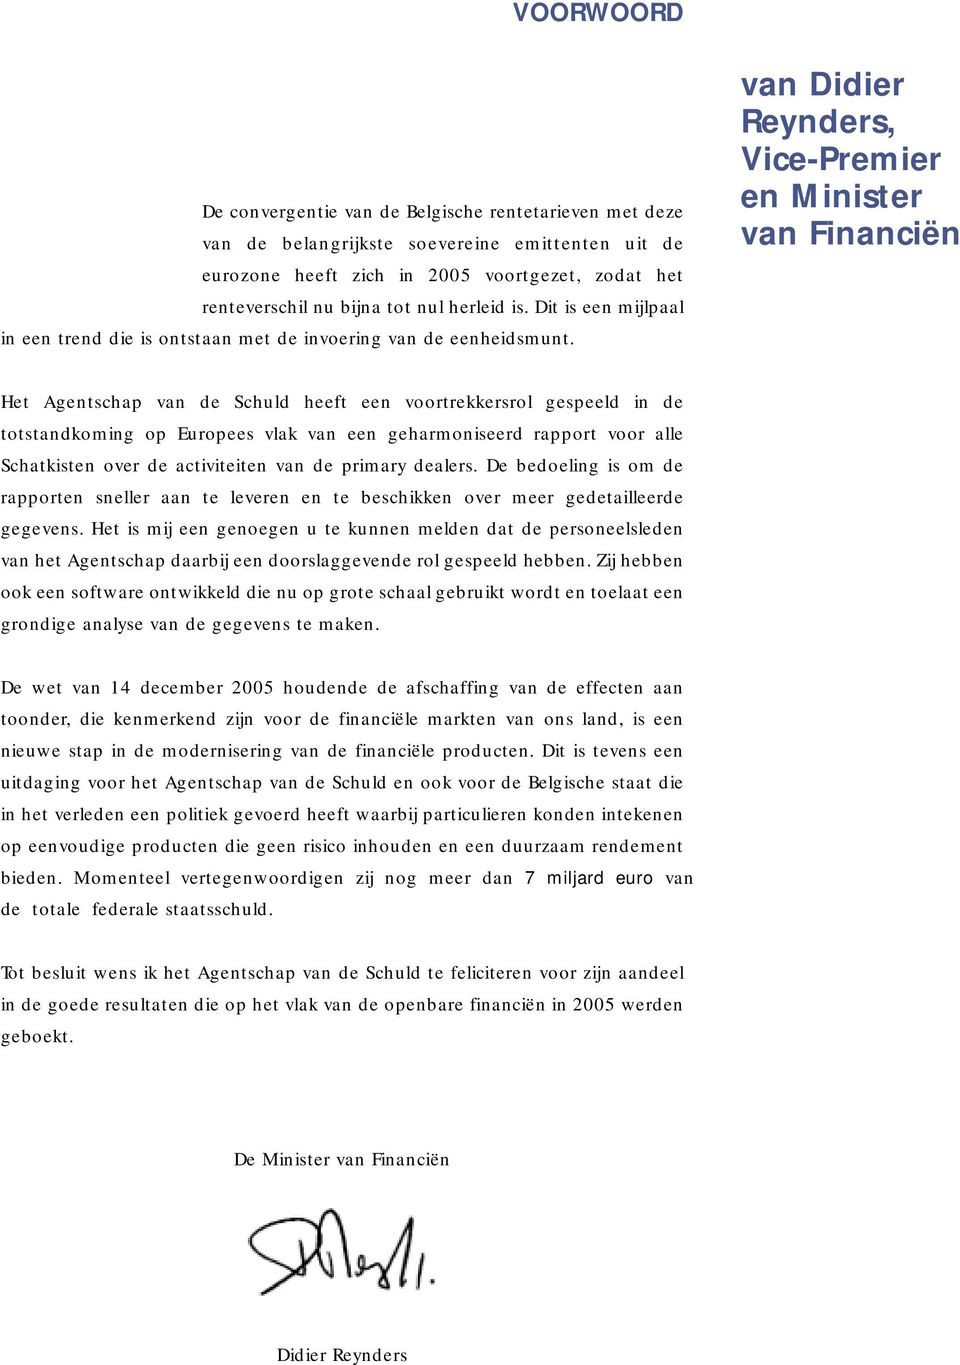 van Didier Reynders, Vice-Premier en inister van Financiën Het gentschap van de Schuld heeft een voortrekkersrol gespeeld in de totstandkoming op Europees vlak van een geharmoniseerd rapport voor